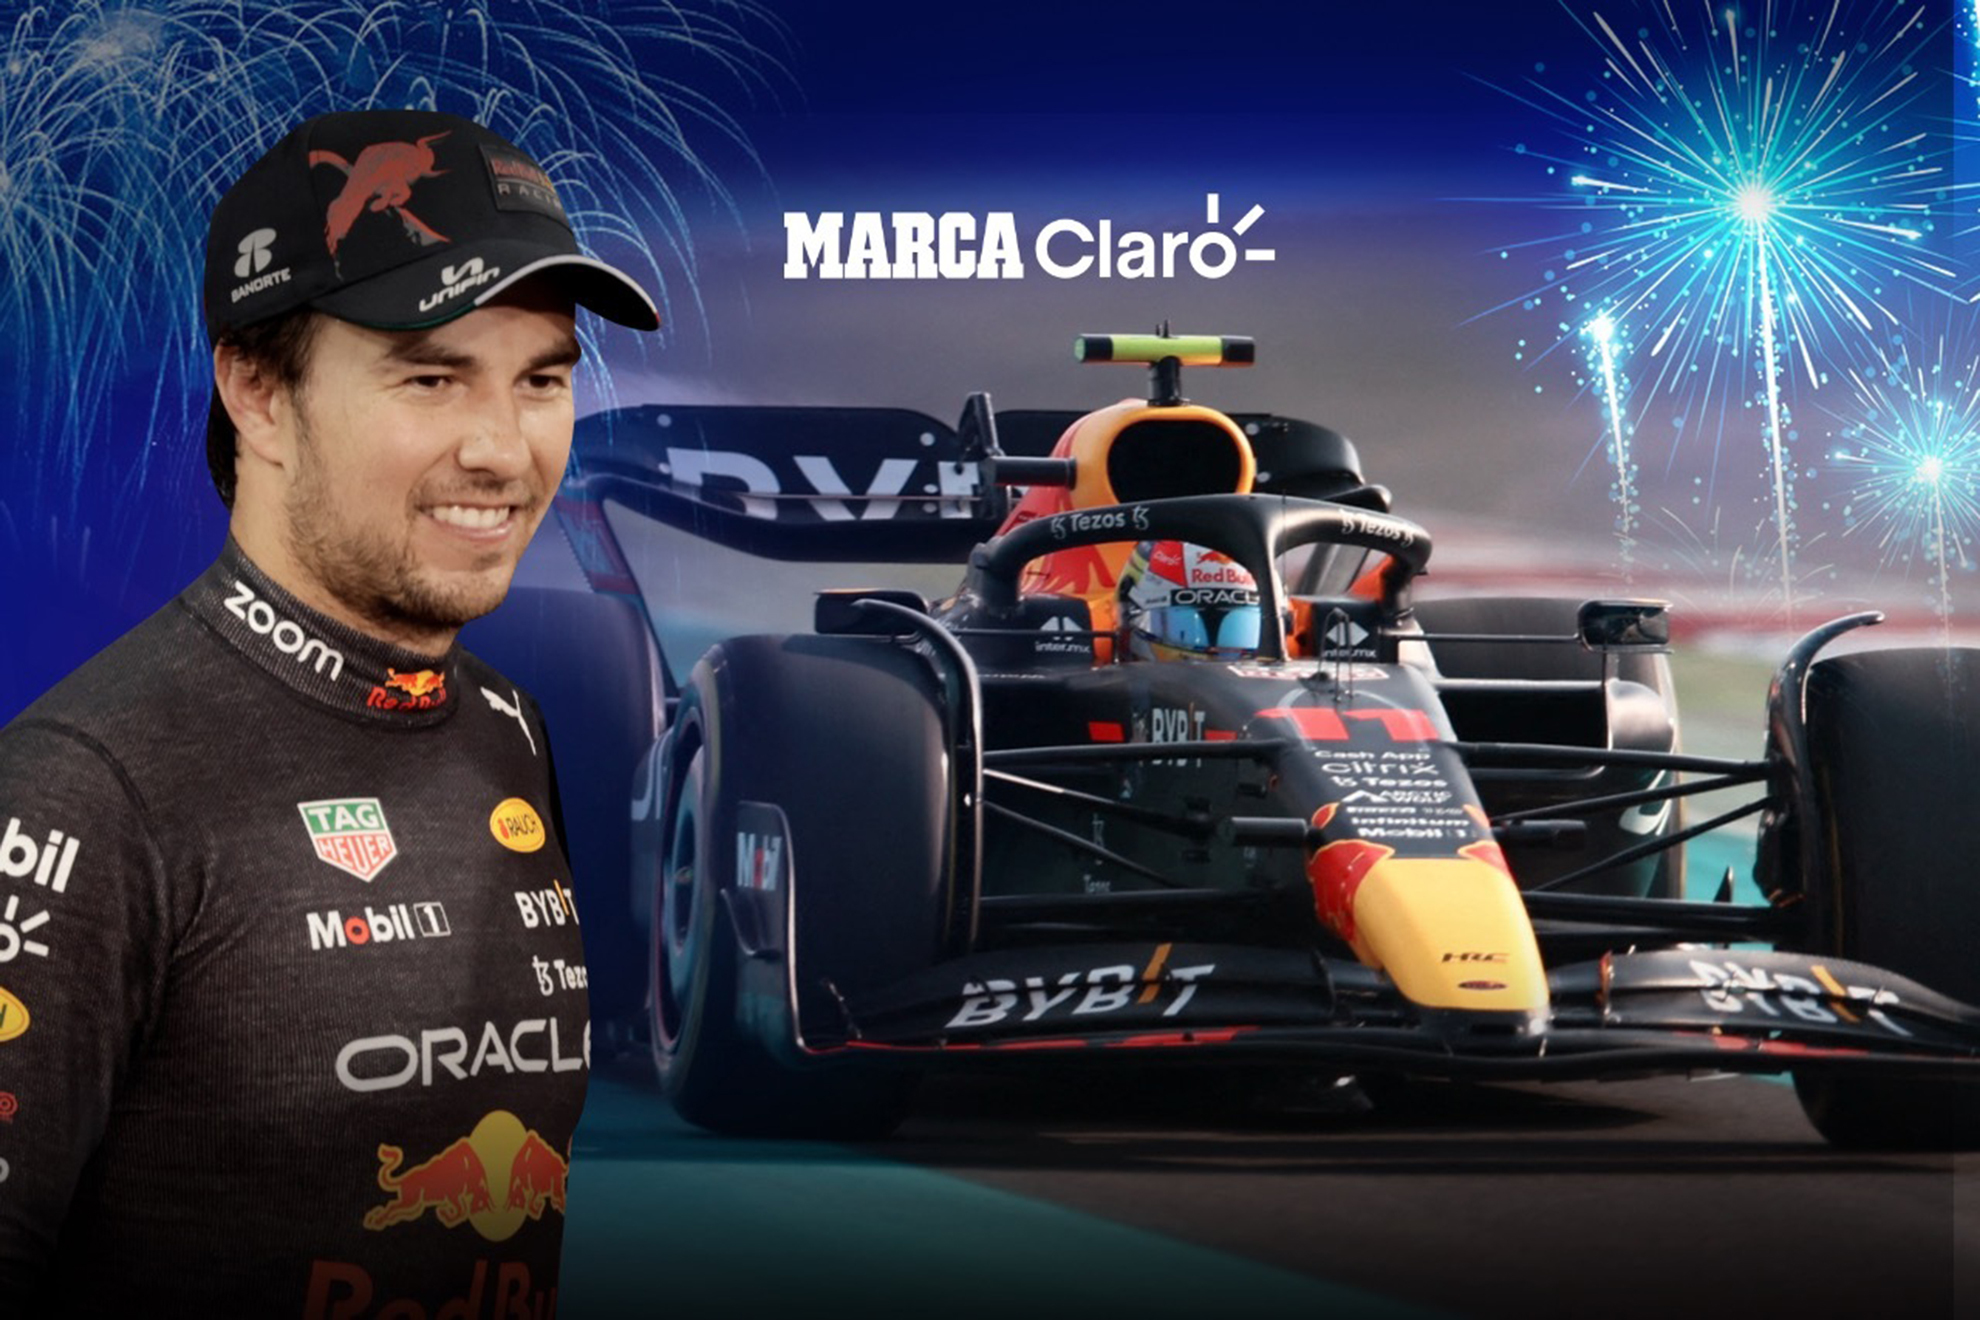 Checo espera coronar su mejor temporada en F1 con el segundo lugar en el campeonato individual | MARCA Claro